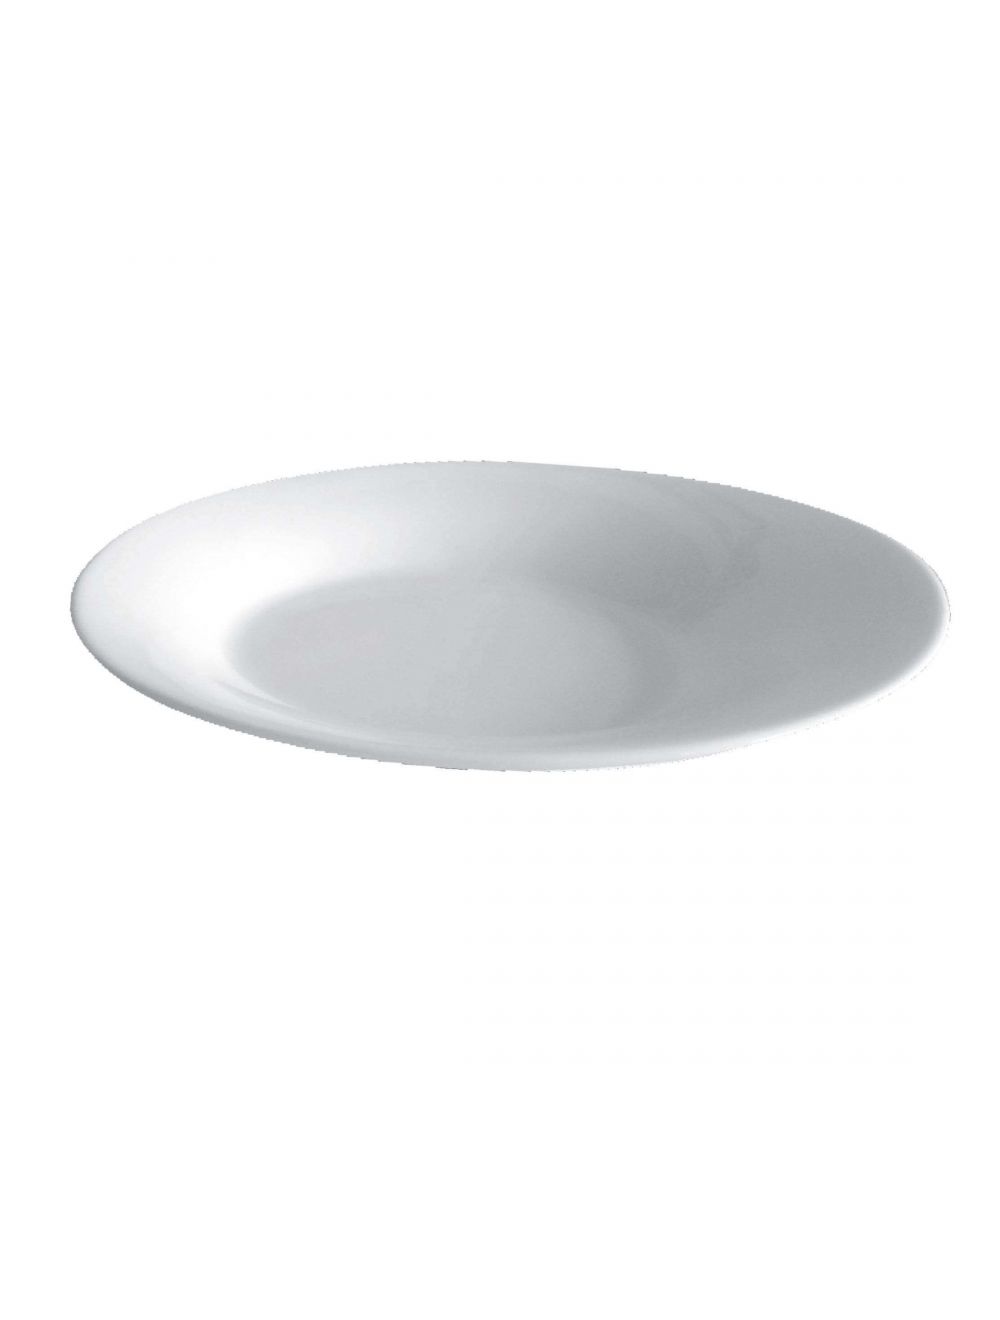 Royalford RF8436 11.75” Porcelain Serving Plate